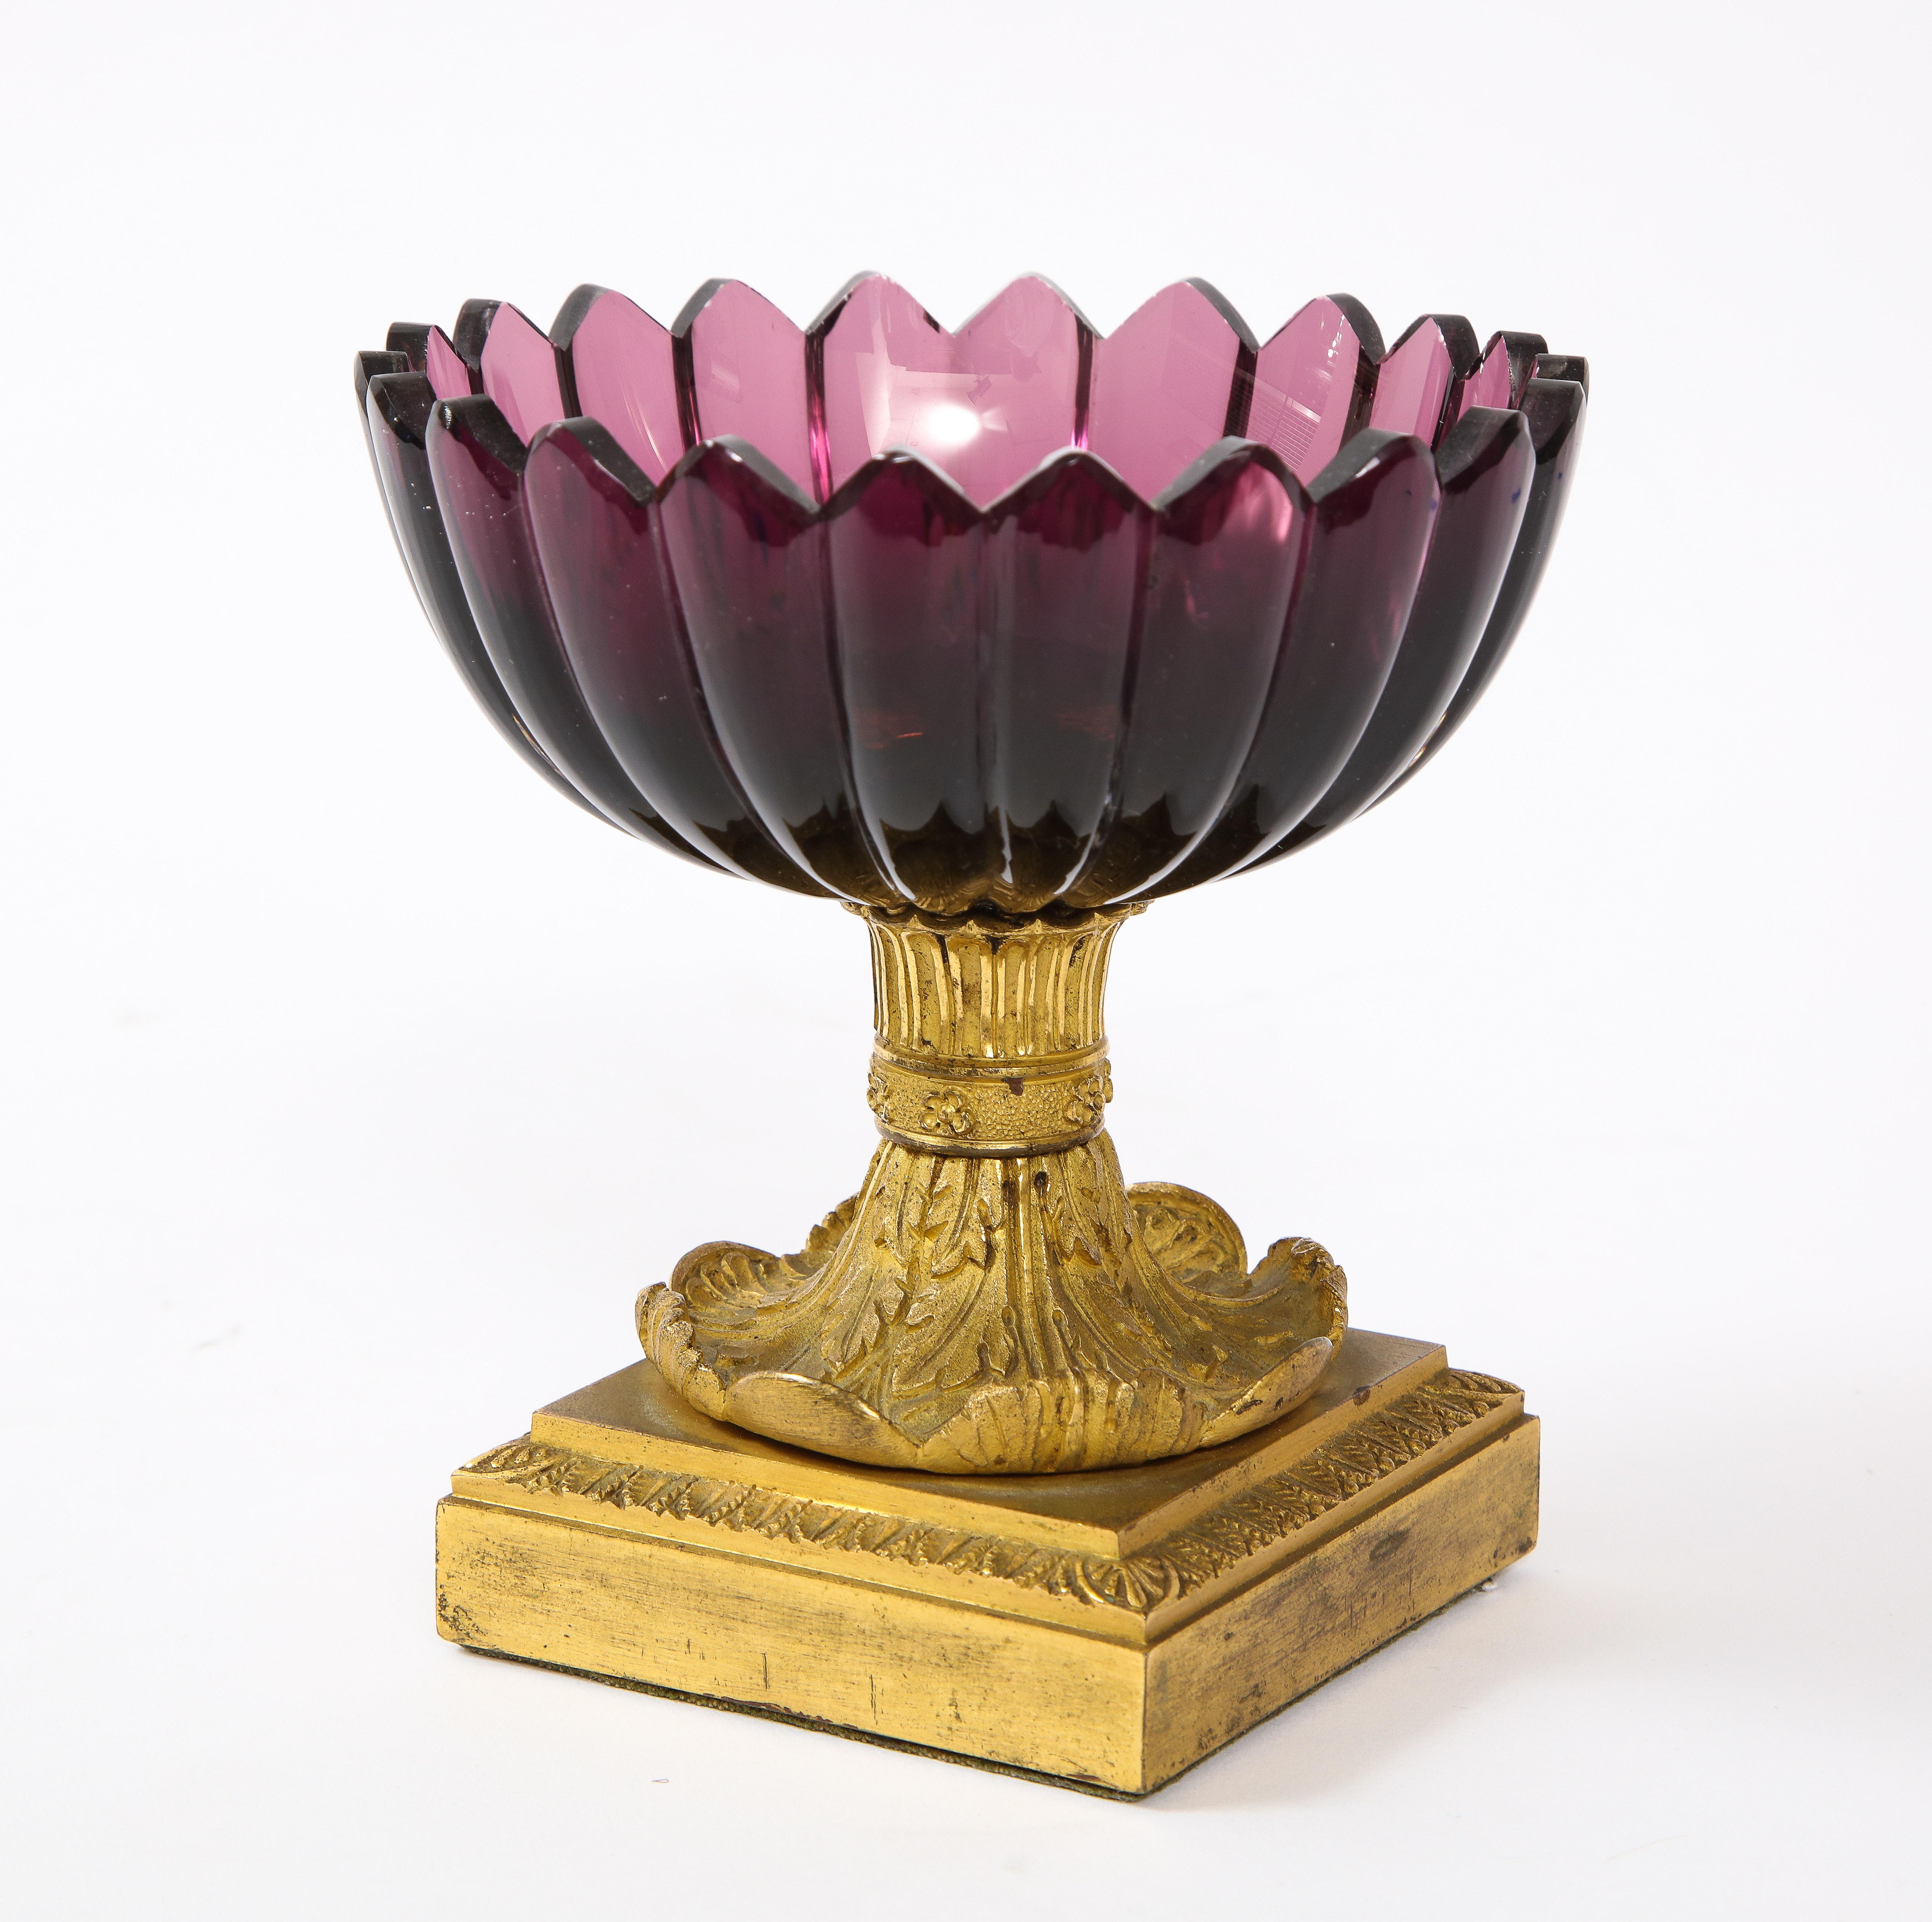 Eine fantastische Qualität 19. Jahrhundert Russisches Reich Periode Dore Bronze montiert Amethyst Kristall gewellten Rand tazza / Cache-Topf. Der Kristall ist von einer schönen, satten amethystfarbenen Farbe. Das Kristall ist wunderschön von Hand